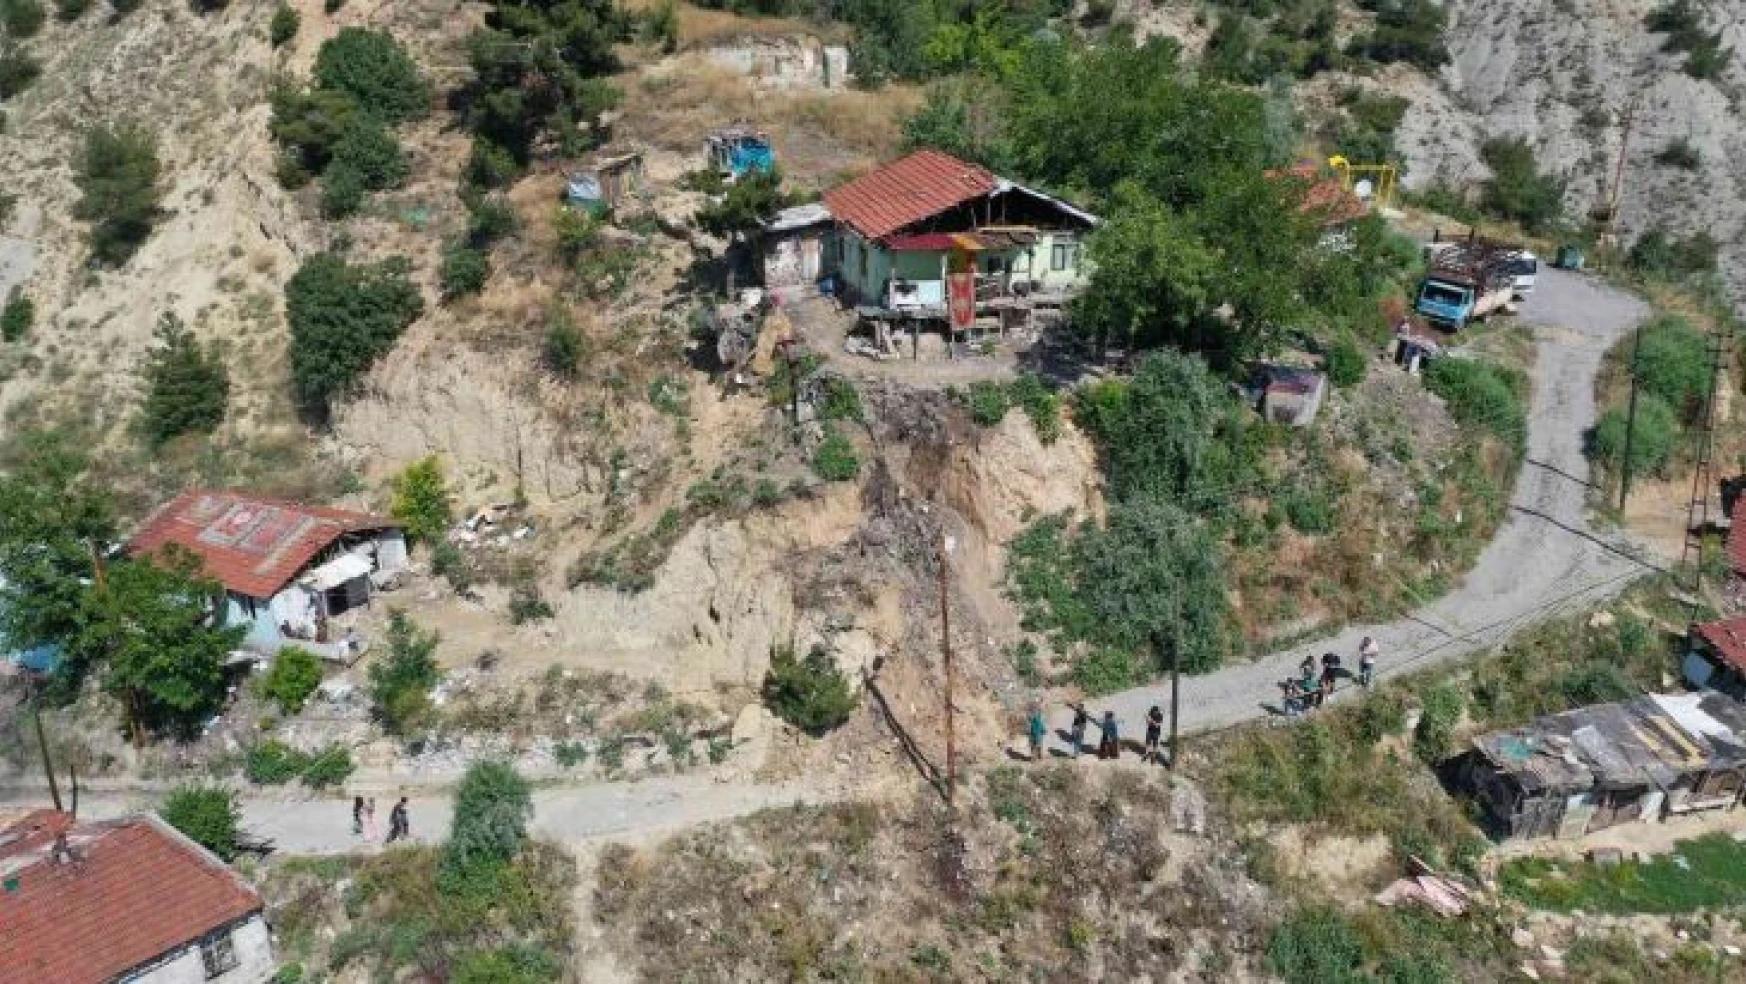 Karabük'te toprak kayması nedeniyle 5 ev tedbir amaçlı boşaltıldı